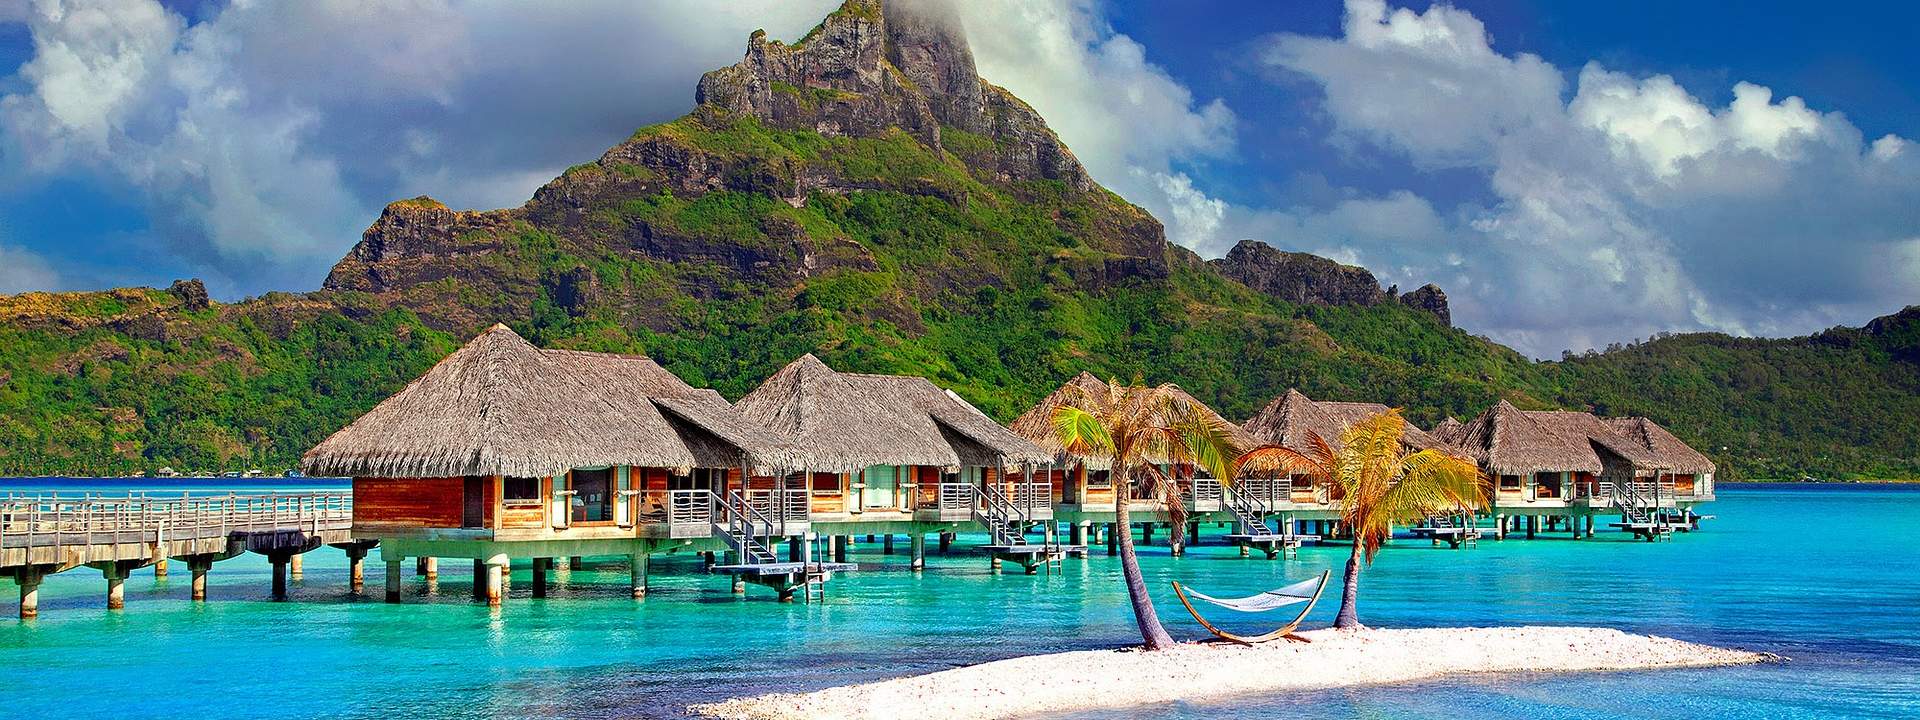 Les plus belles îles de Polynésie en catamaran